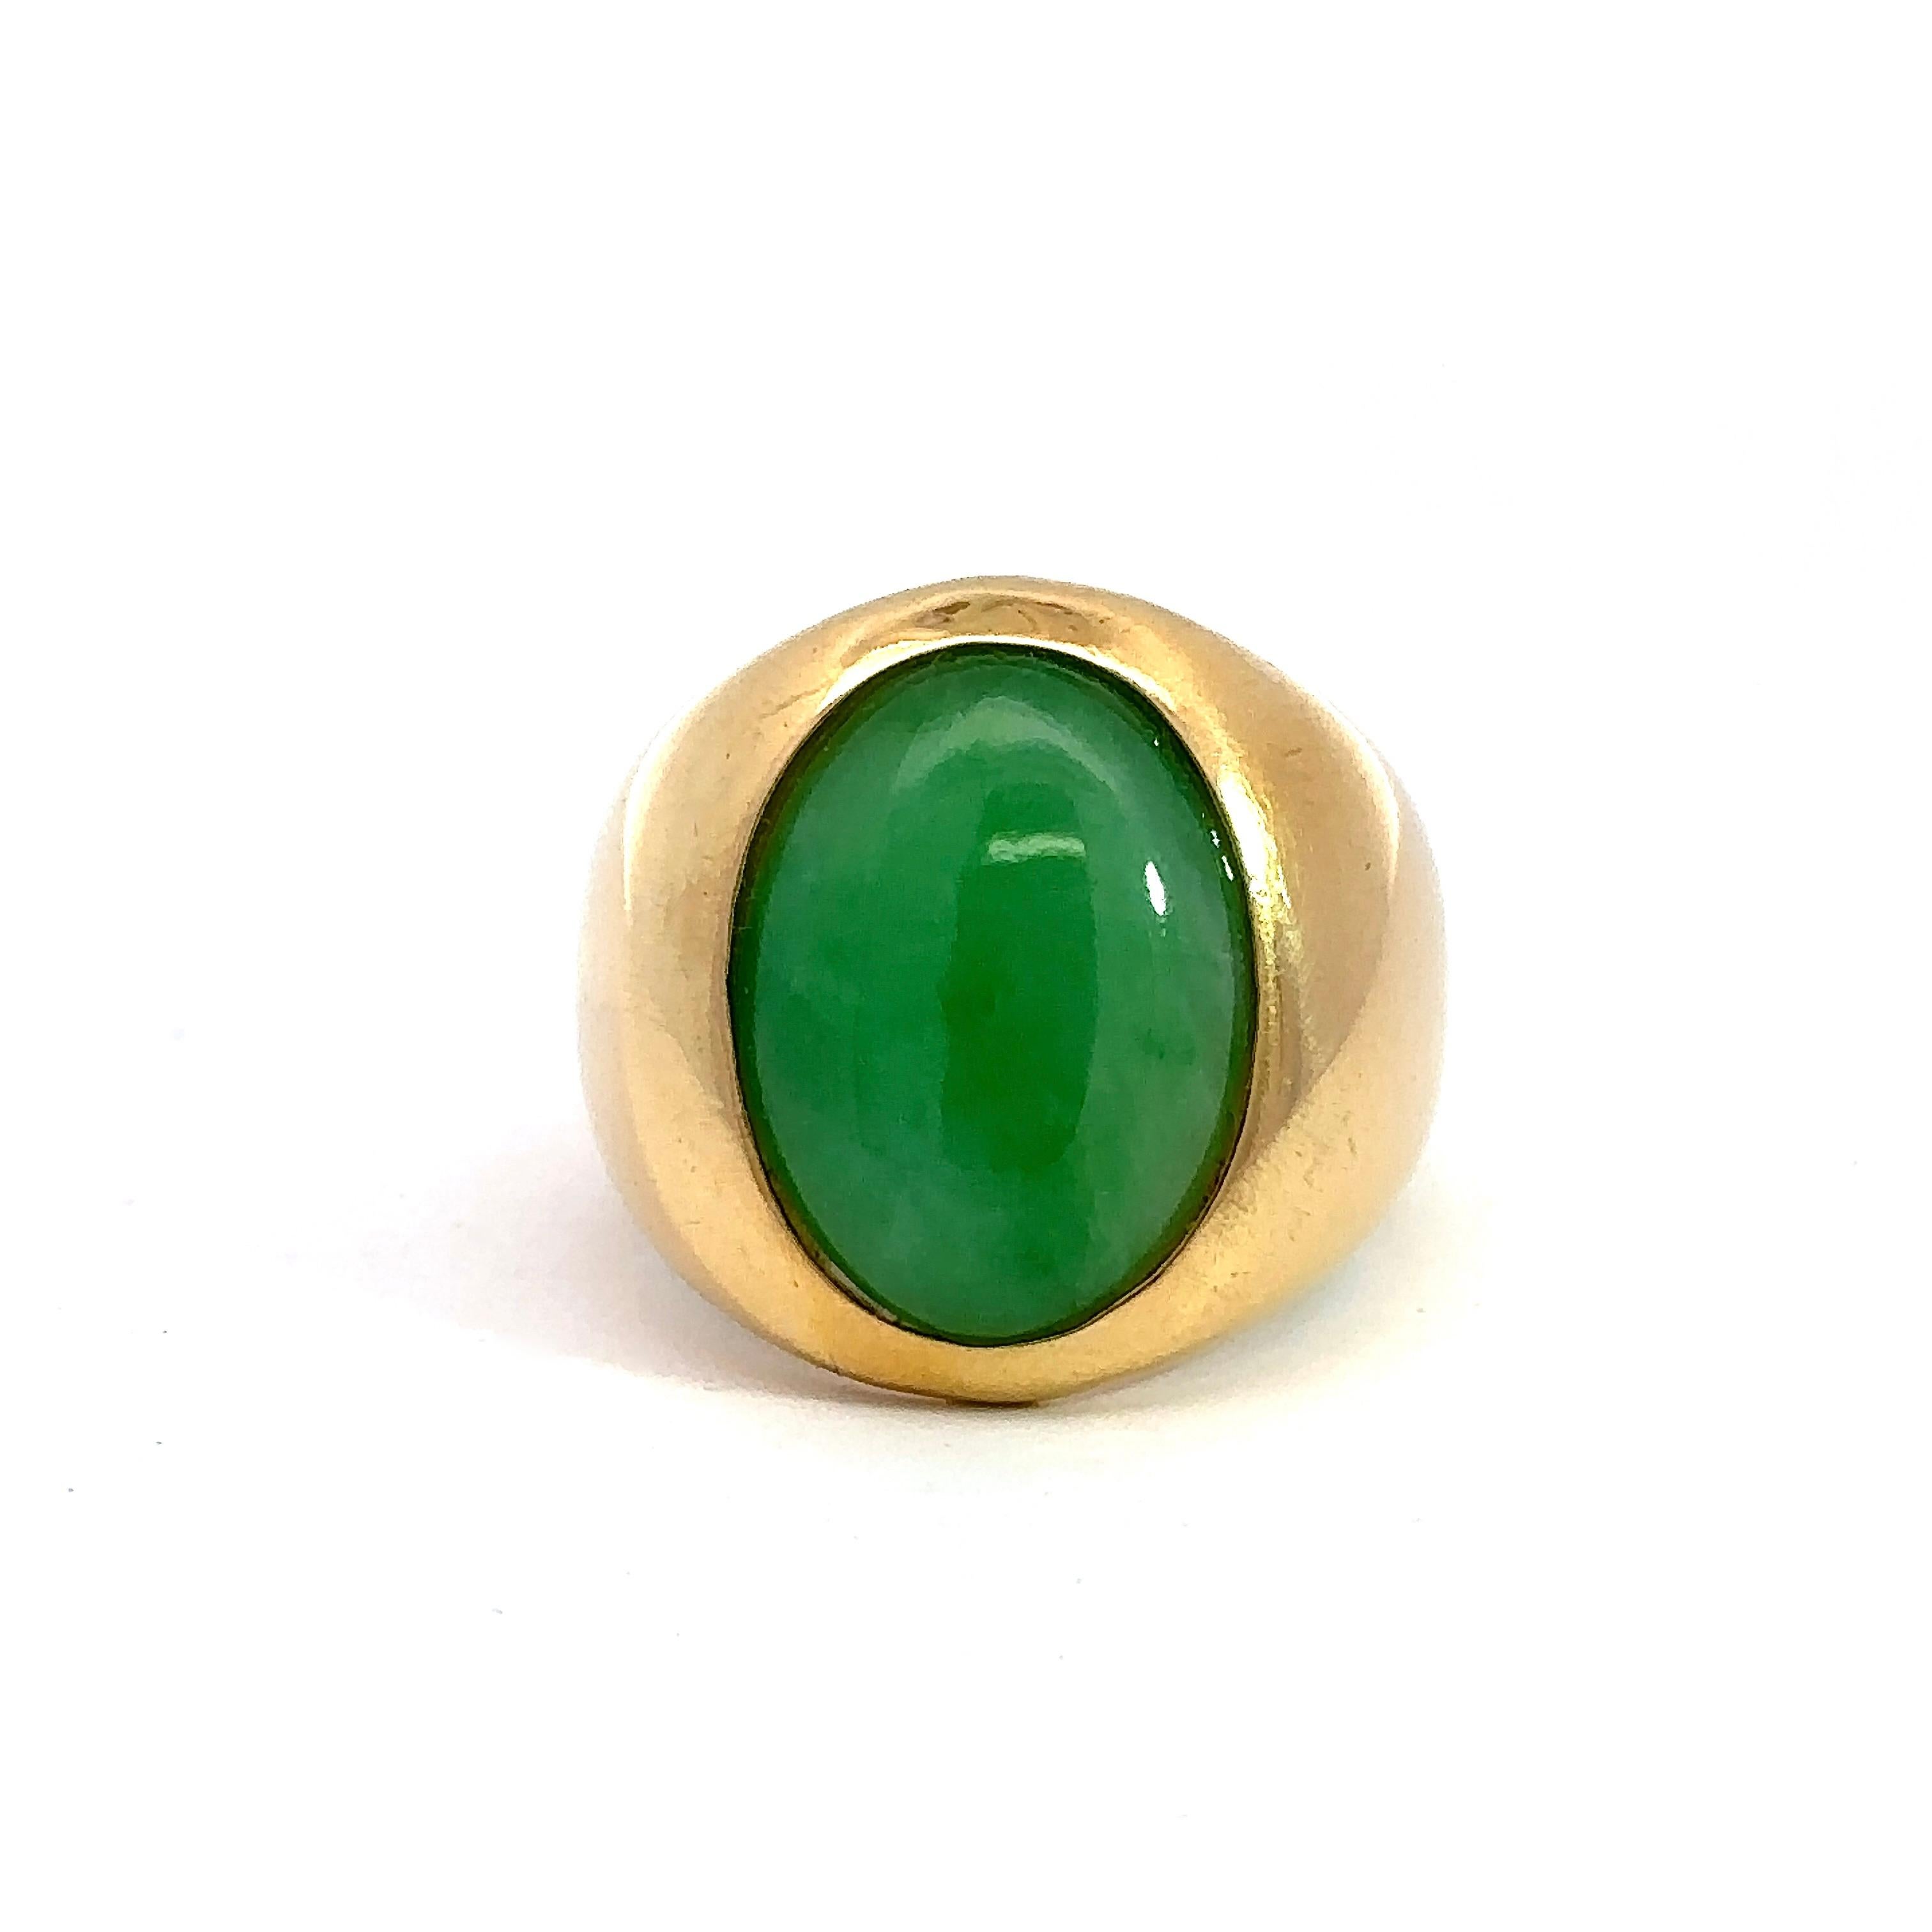 Cette bague de chevalière en jade cabochon ovale est réalisée en or jaune 18KT et date des années 1970. Le jade vert ovale, serti en biseau, mesure environ 16 mm x 12 mm et la tige se rétrécit jusqu'à 6 mm. La bague est de taille 6,5 et peut être